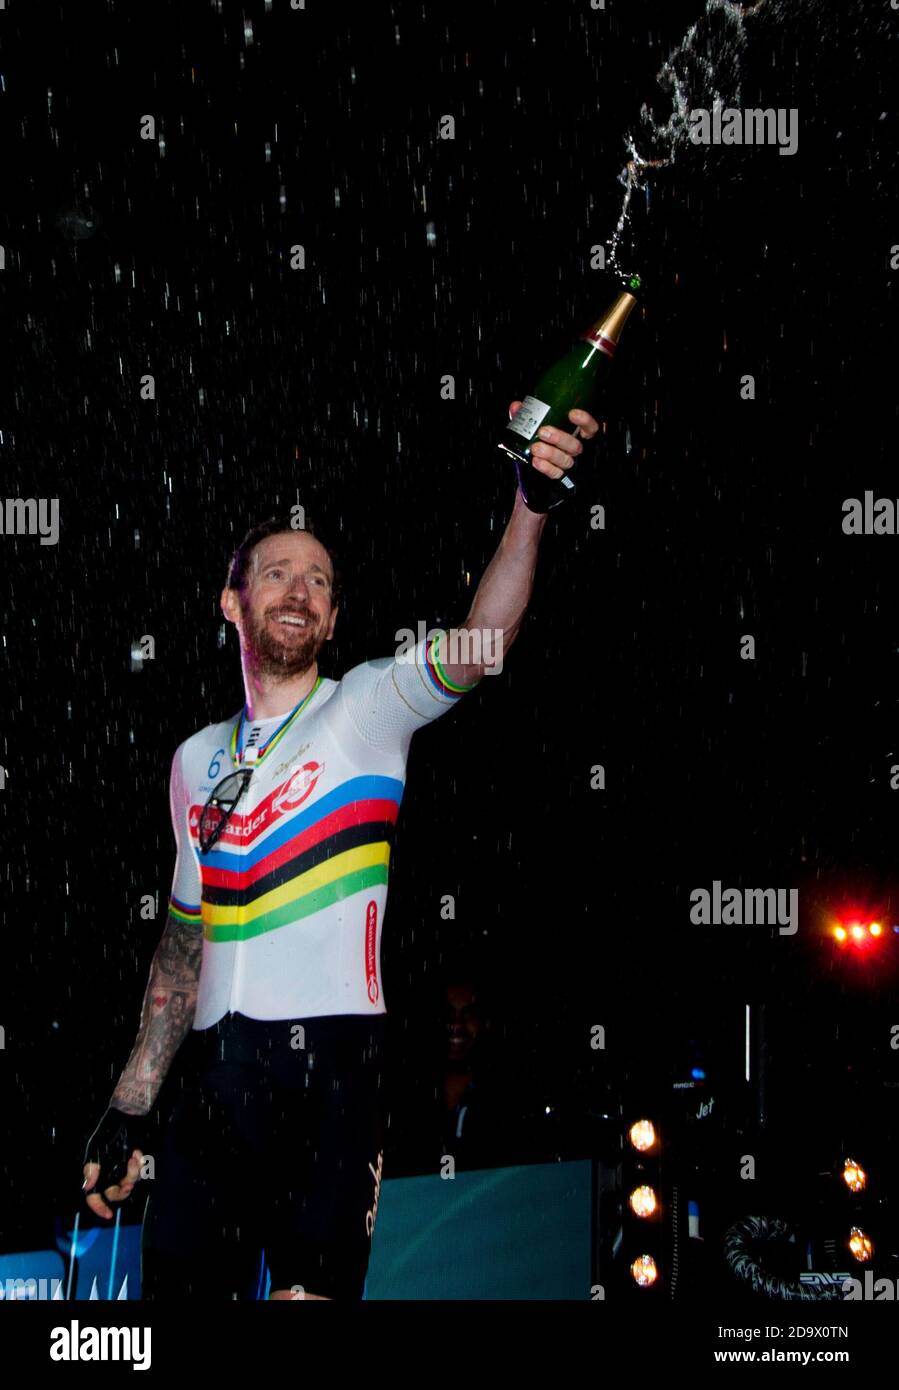 Bradley Wiggins lancia champagne alla folla mentre festeggia il traguardo sul podio. I piloti hanno partecipato al campionato di ciclismo di sei giorni a Lee Valley Velodrome, Londra, Regno Unito. Foto Stock